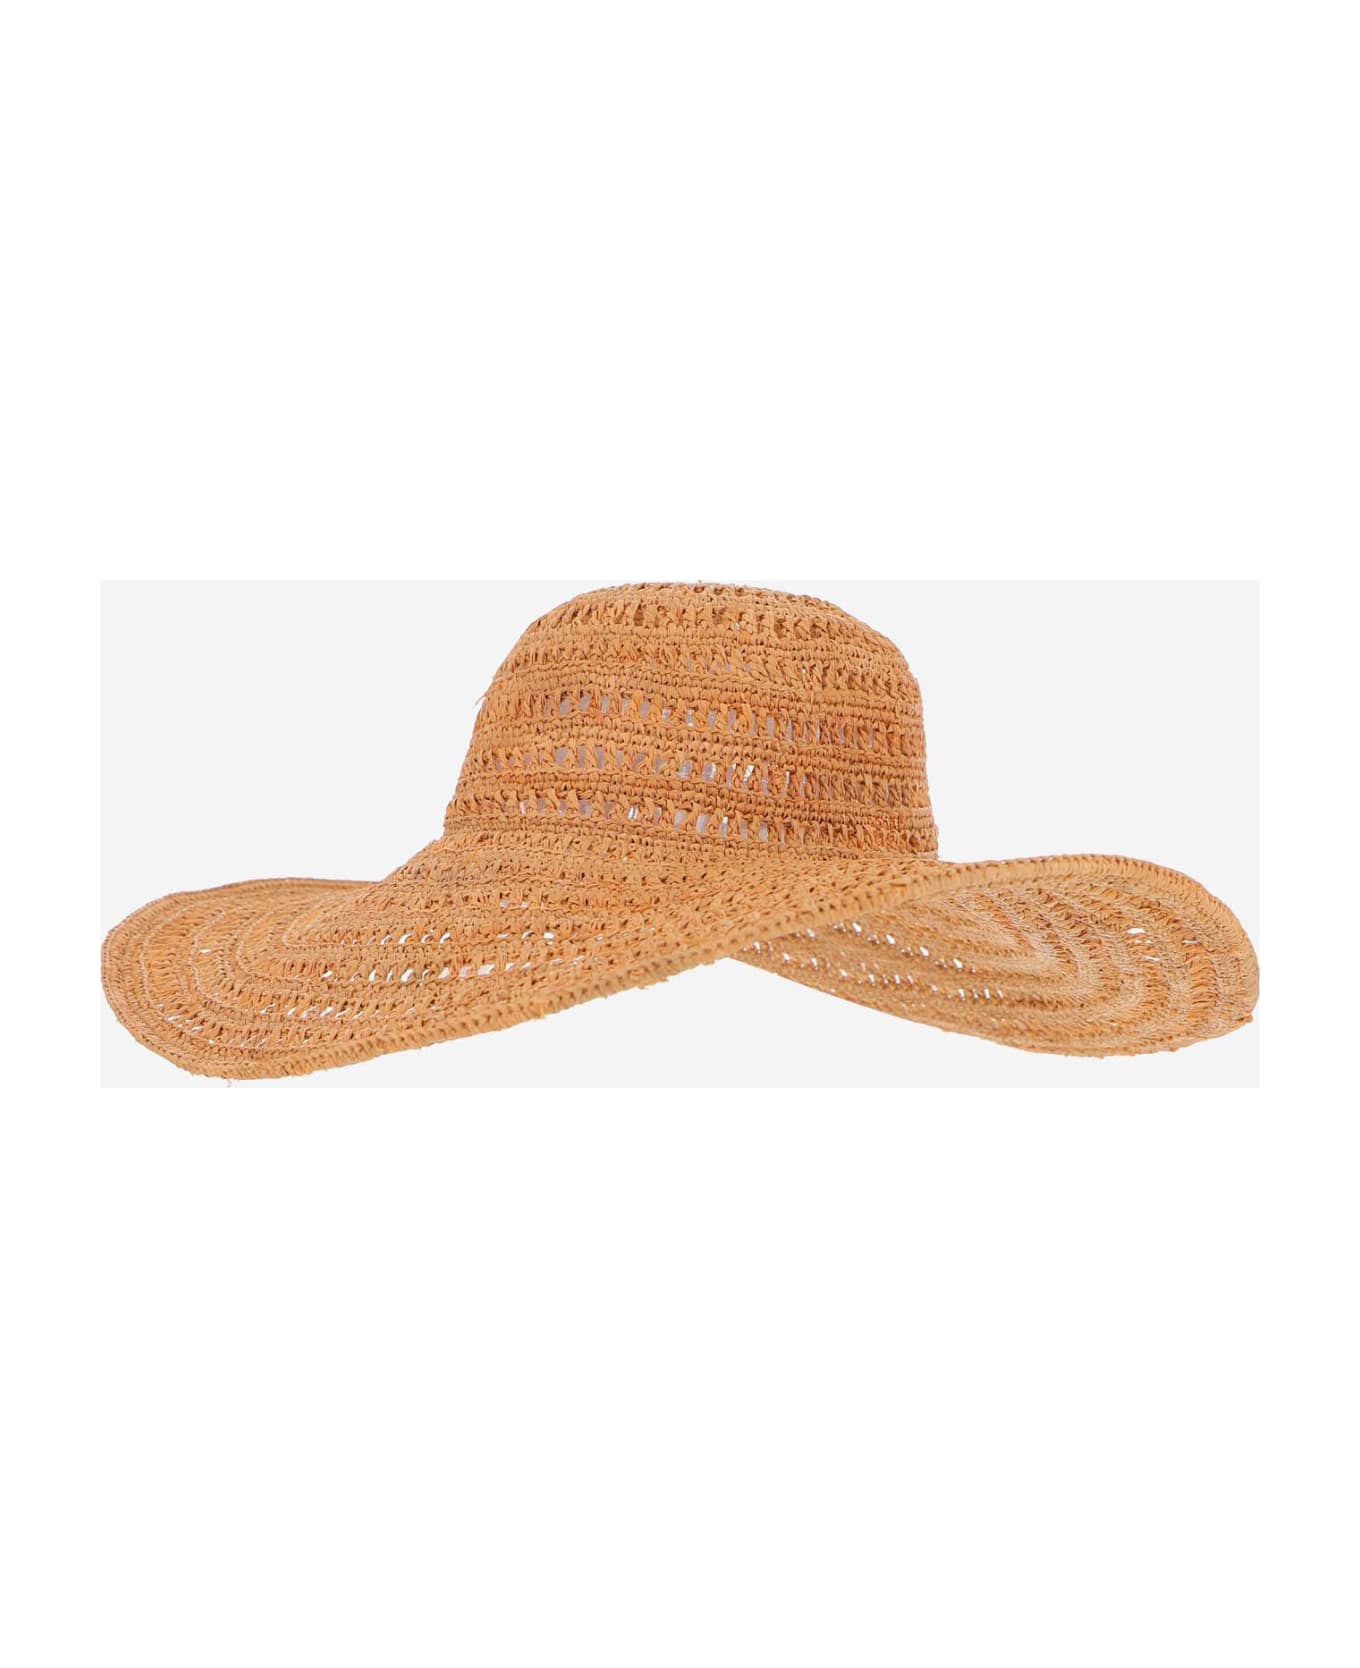 Ibeliv Raffia Miaro Hat - Beige 帽子